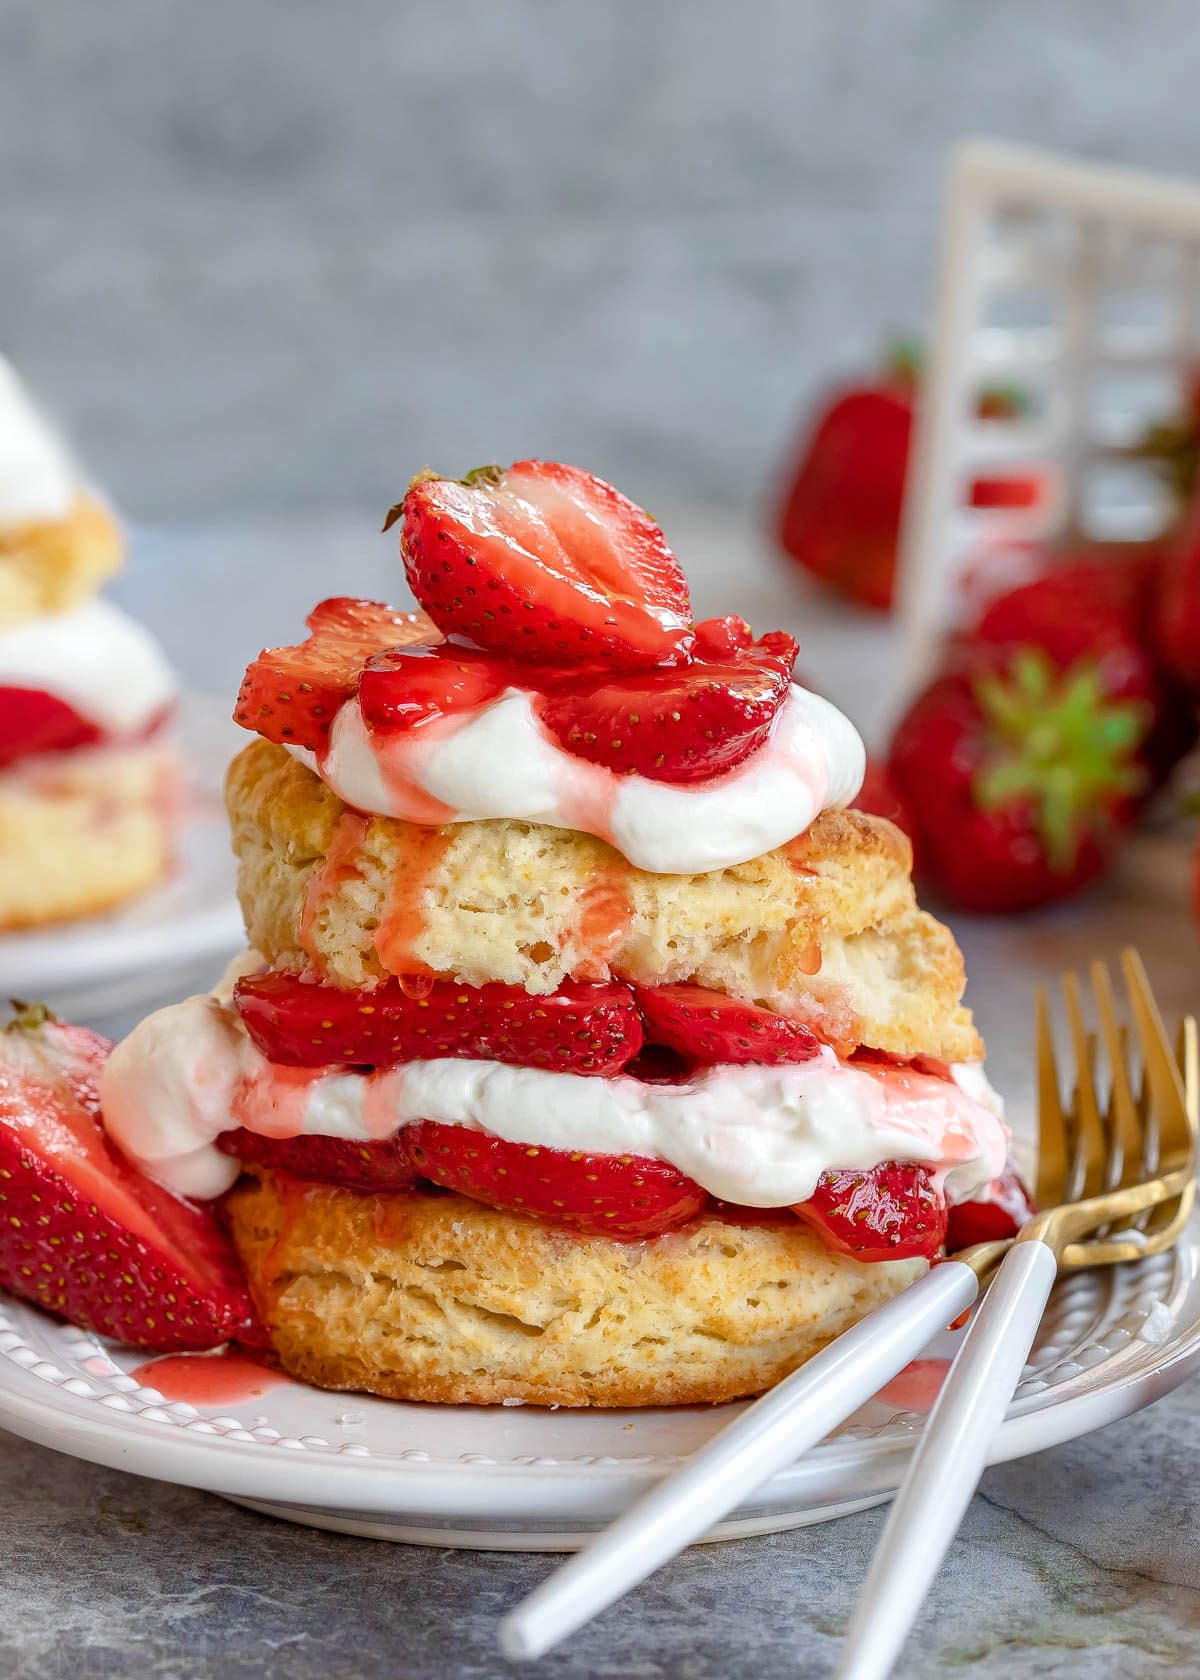 Portillo's Strawberry Shortcake Recipe - Find Vegetarian Recipes